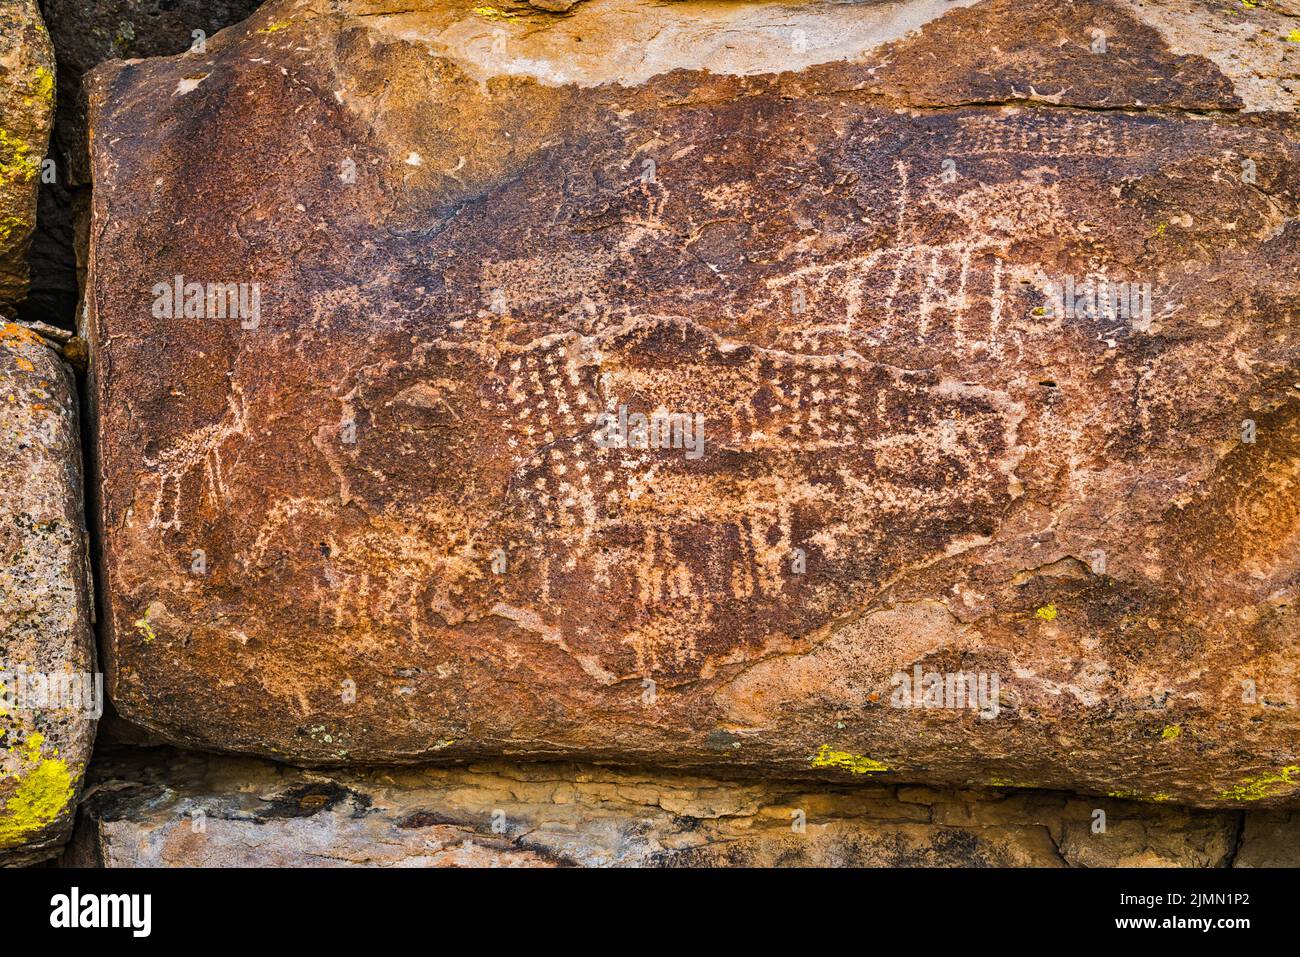 Panel de petroglifos en el afloramiento de Tuff, Distrito Arqueológico Mt Irish, Locus Occidental, Monumento Nacional Basin and Range, Nevada, EE.UU Foto de stock